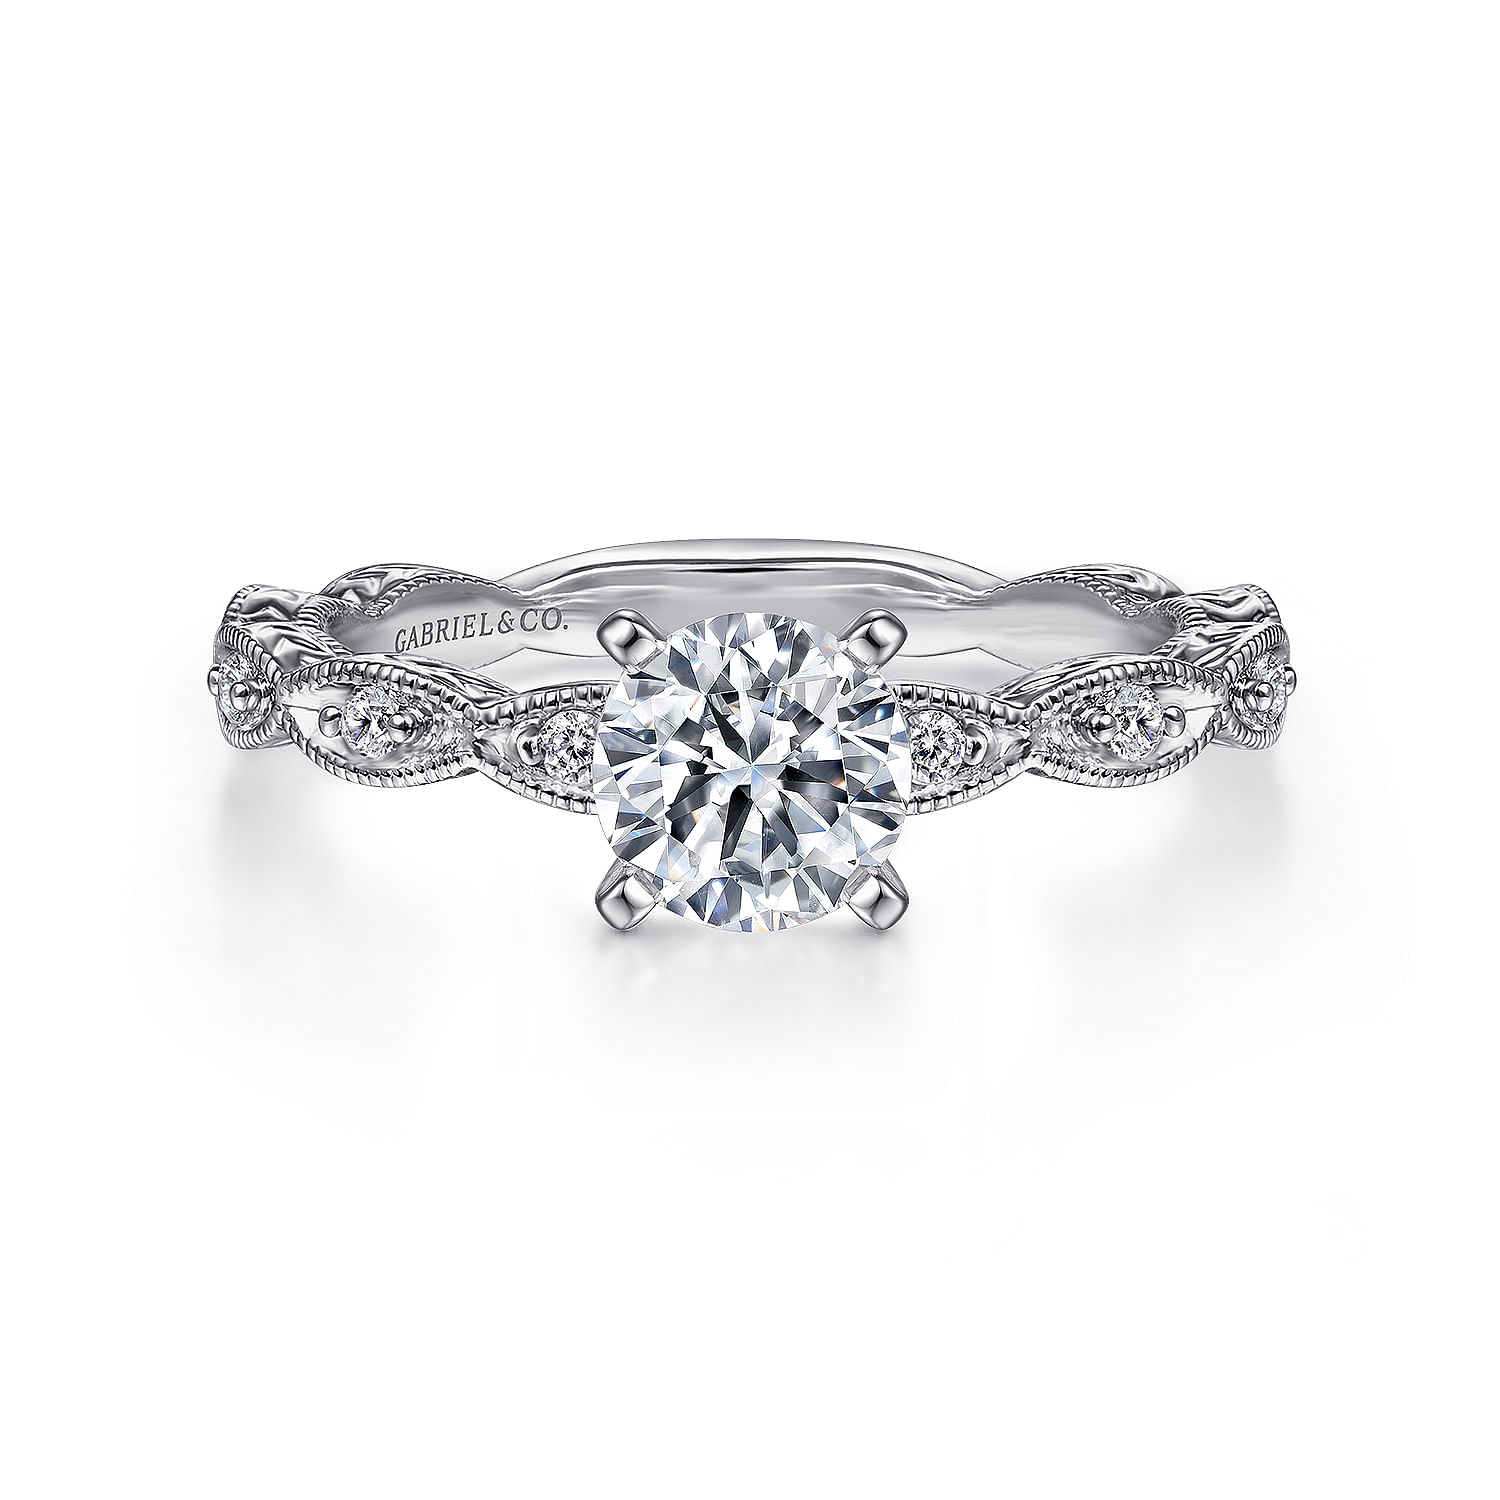 Sadie---Vintage-Inspired-14K-White-Gold-Round-Diamond-Engagement-Ring1